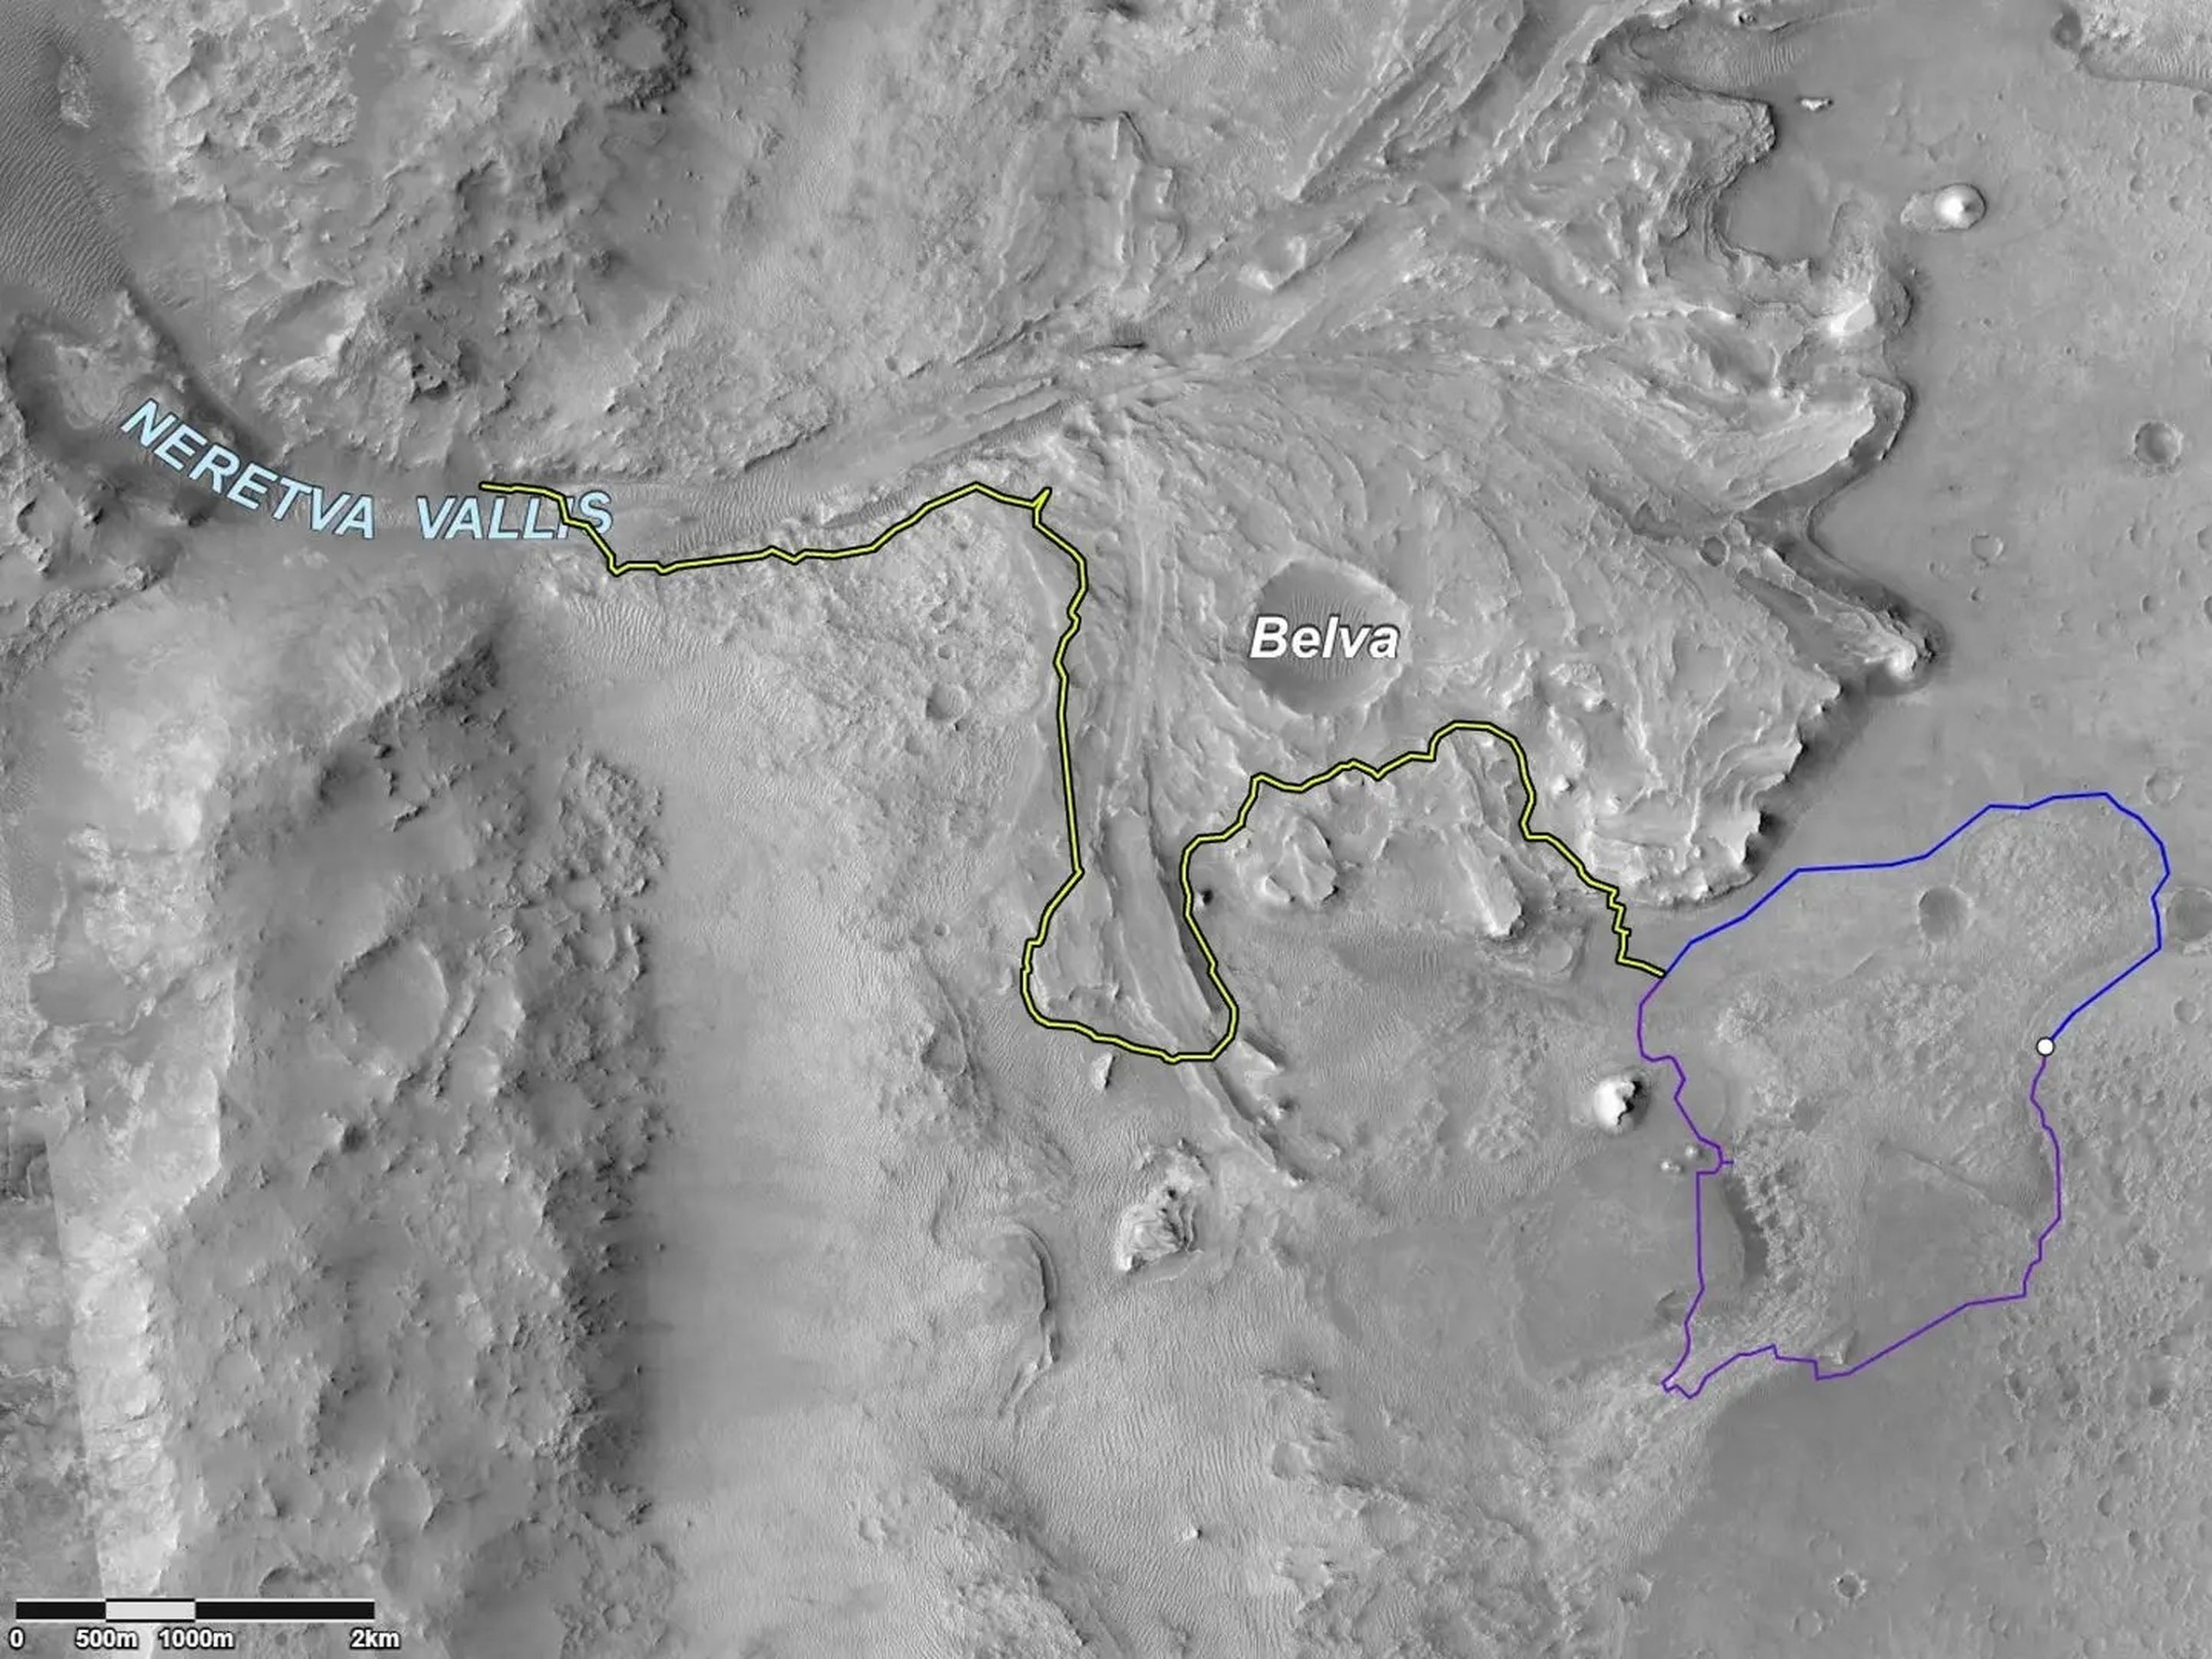 Dos posibles rutas (azul y púrpura) que podría tomar para llegar al depósito de sedimentos en forma de abanico que una vez fue un delta fluvial. La línea amarilla marca una posible ruta para explorar el delta del Jezero.